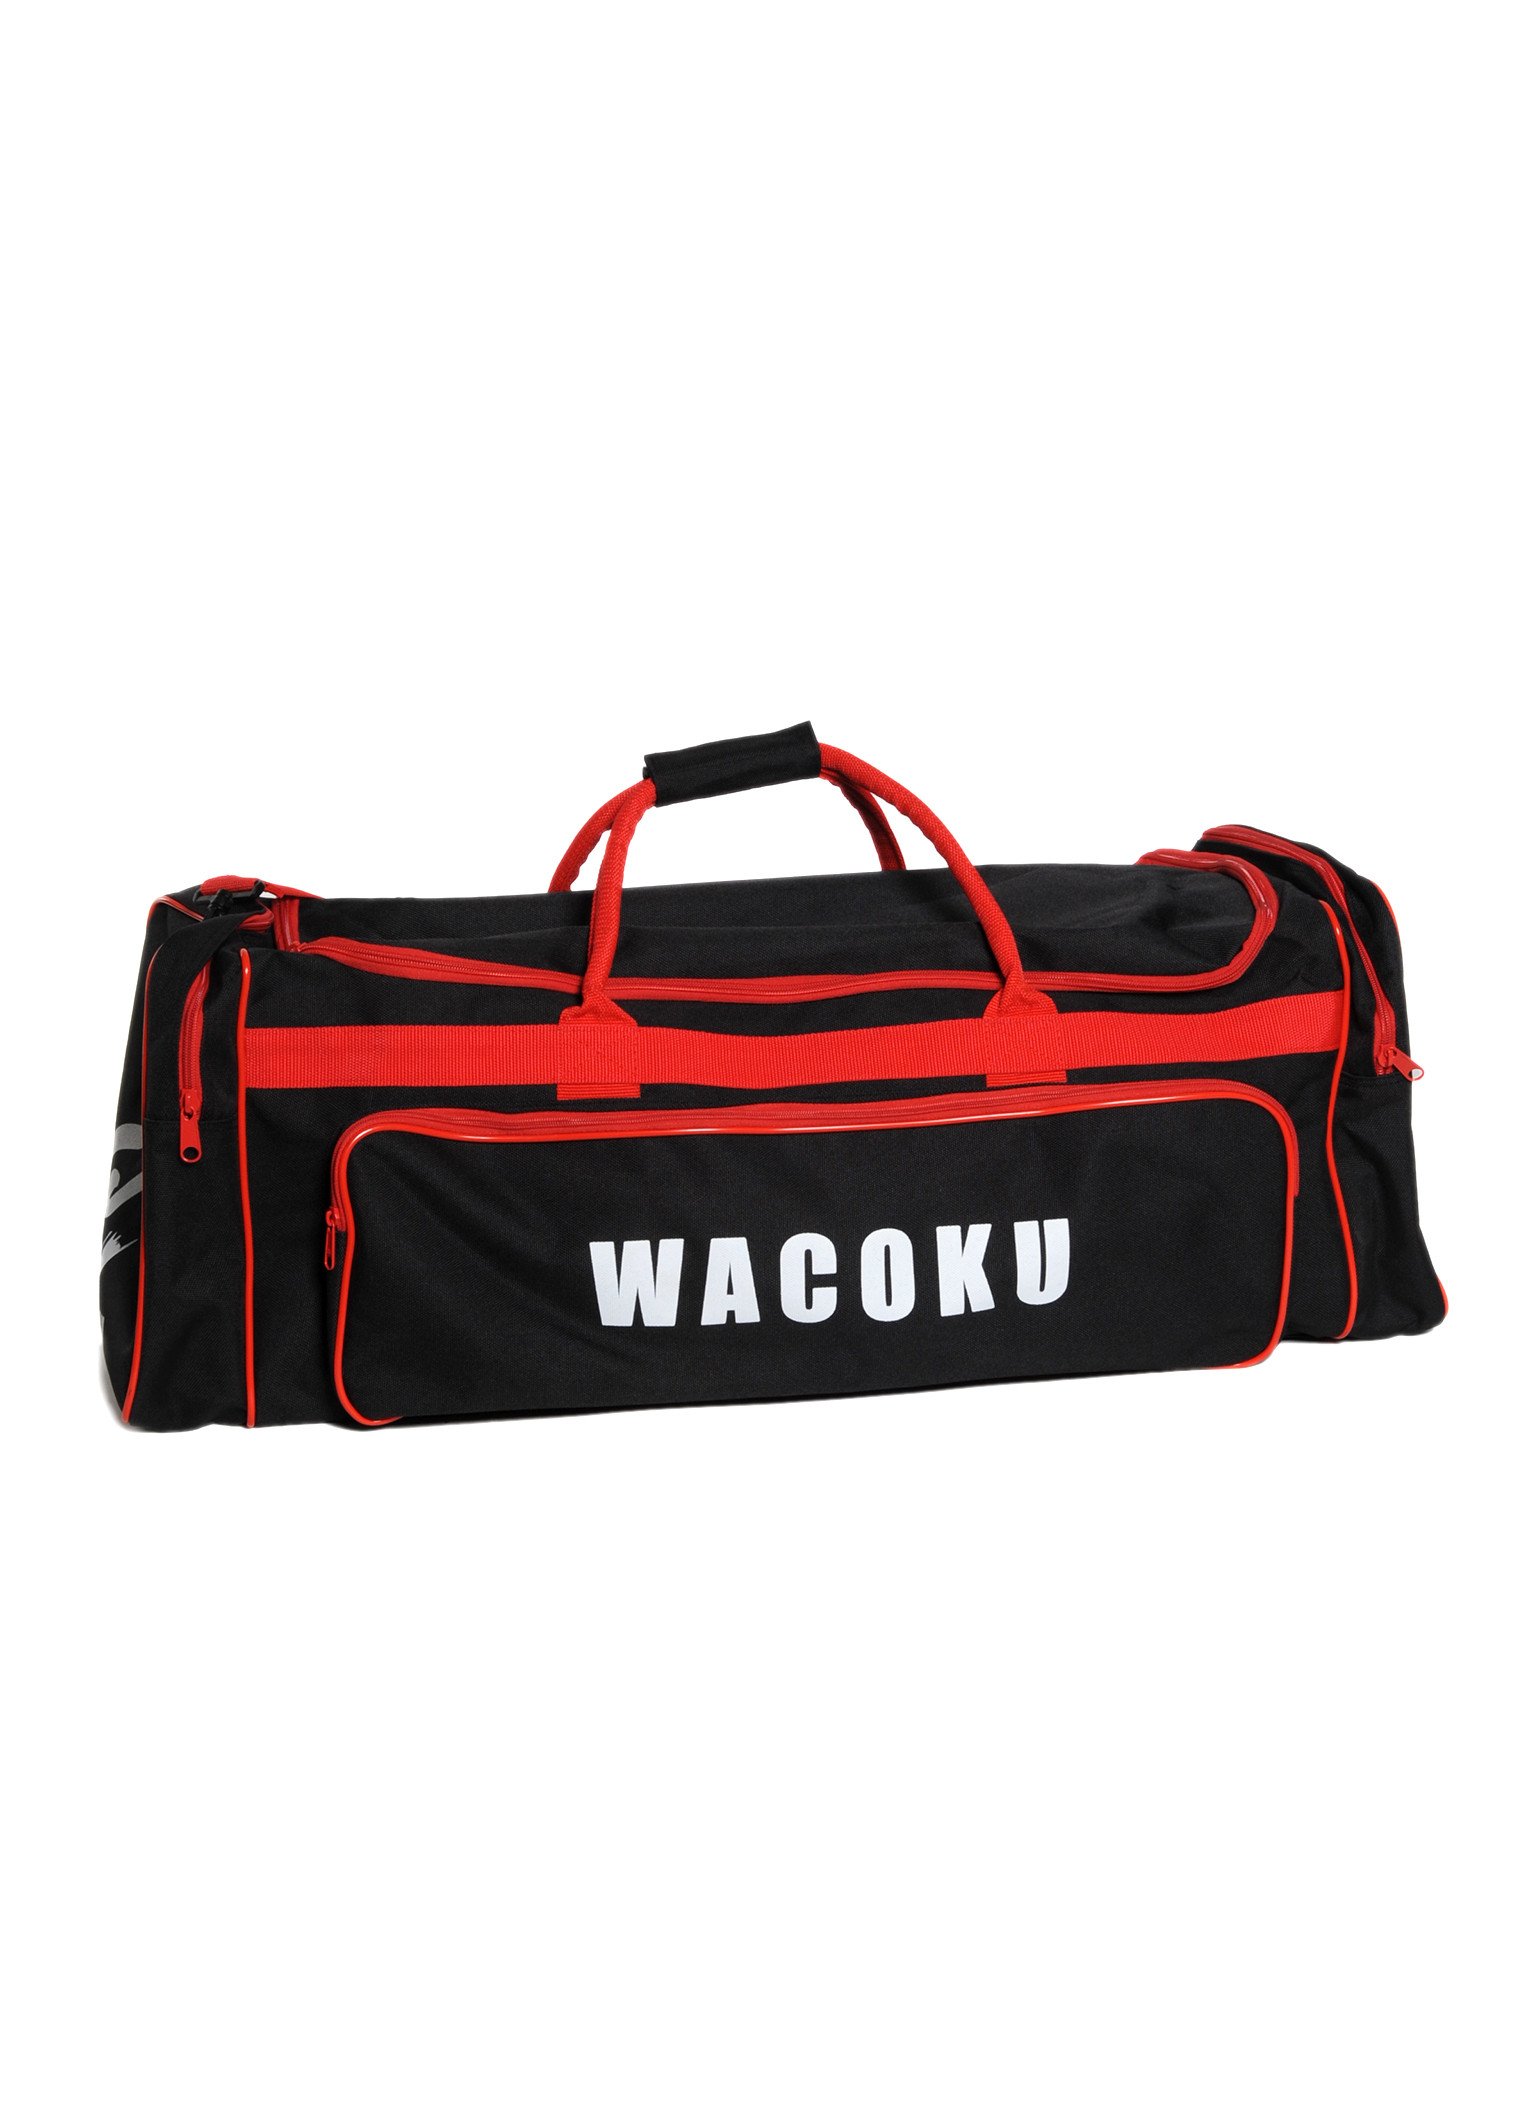 Wacoku Wkf Approuvé Karaté Sac en Toile Sac Sport & Sac à Dos 